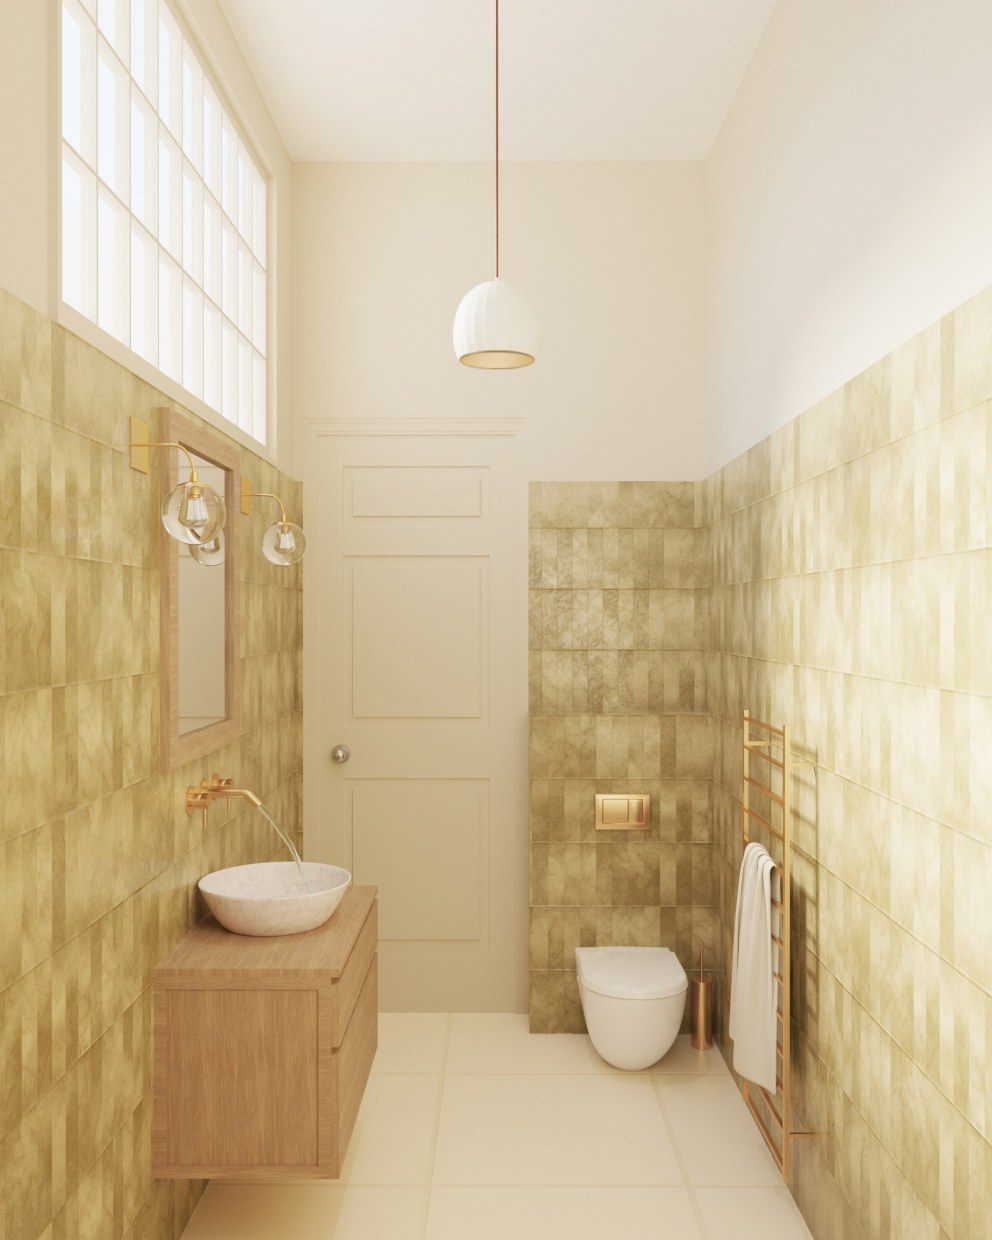 Chiswick, Apartment Redesign | Chiswick Apartment Bathroom Design | Interior Designers